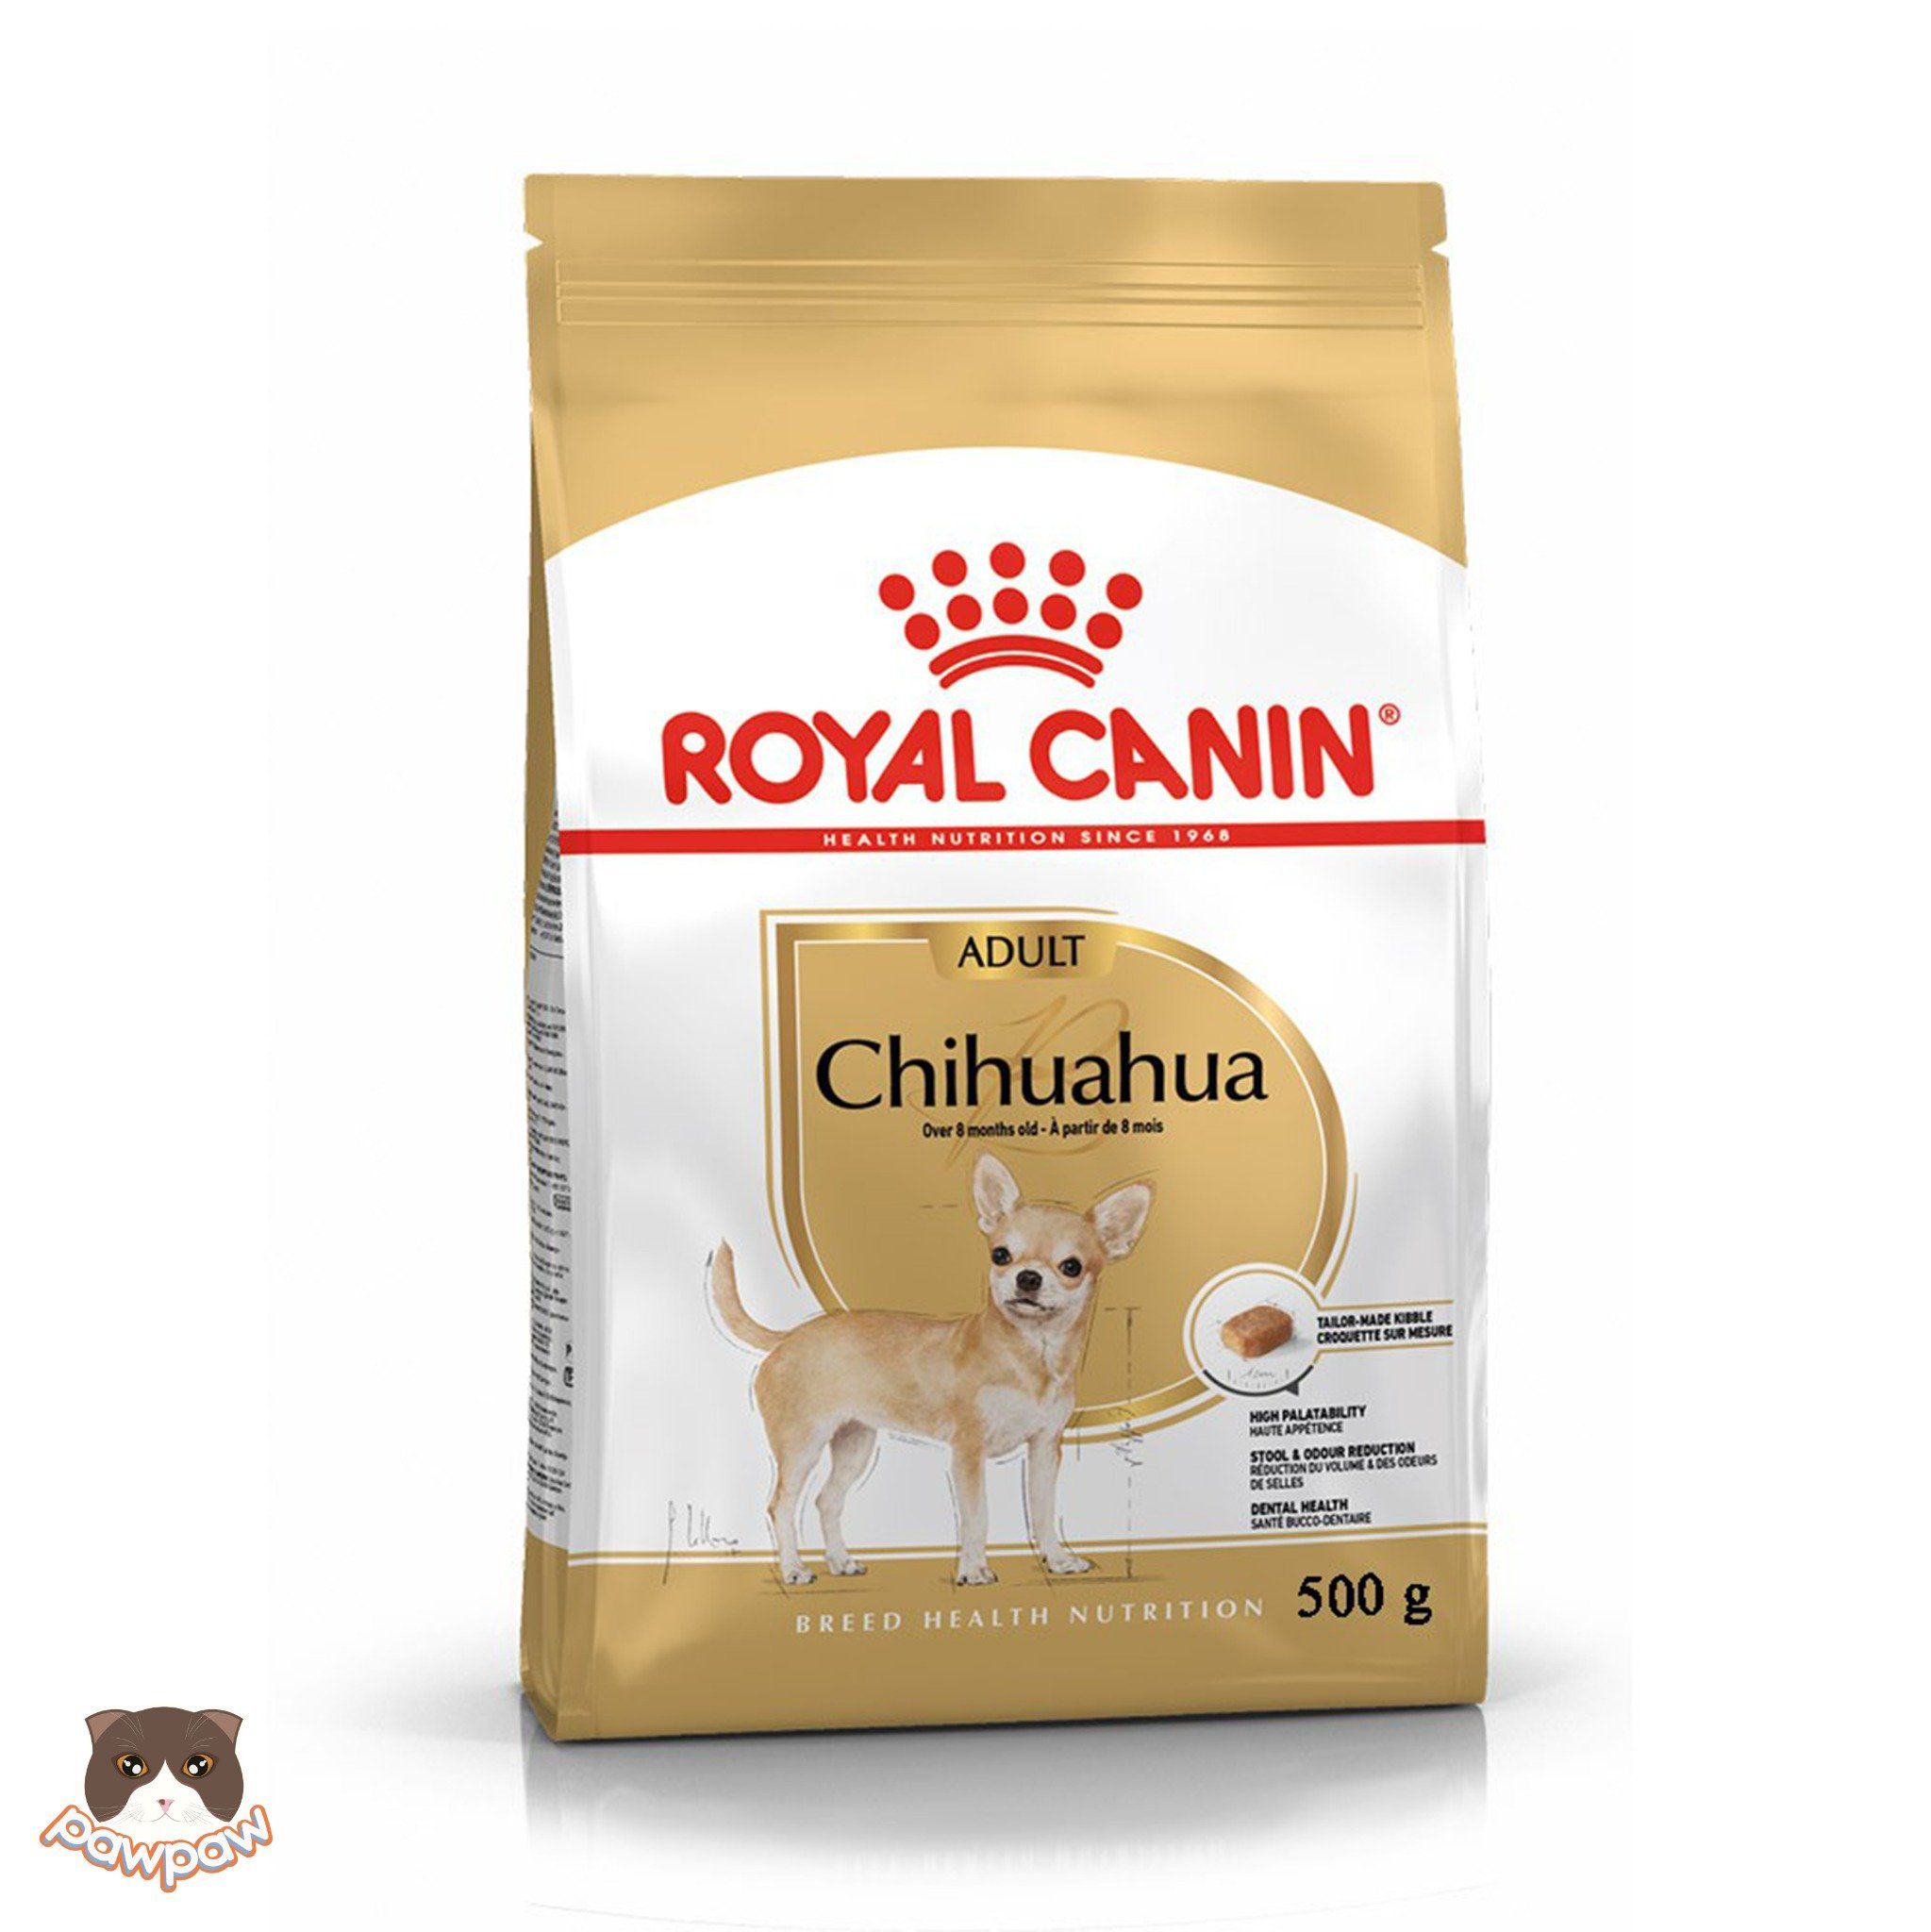  Hạt Royal Canin Chihuahua Adult cho chó trưởng thành 